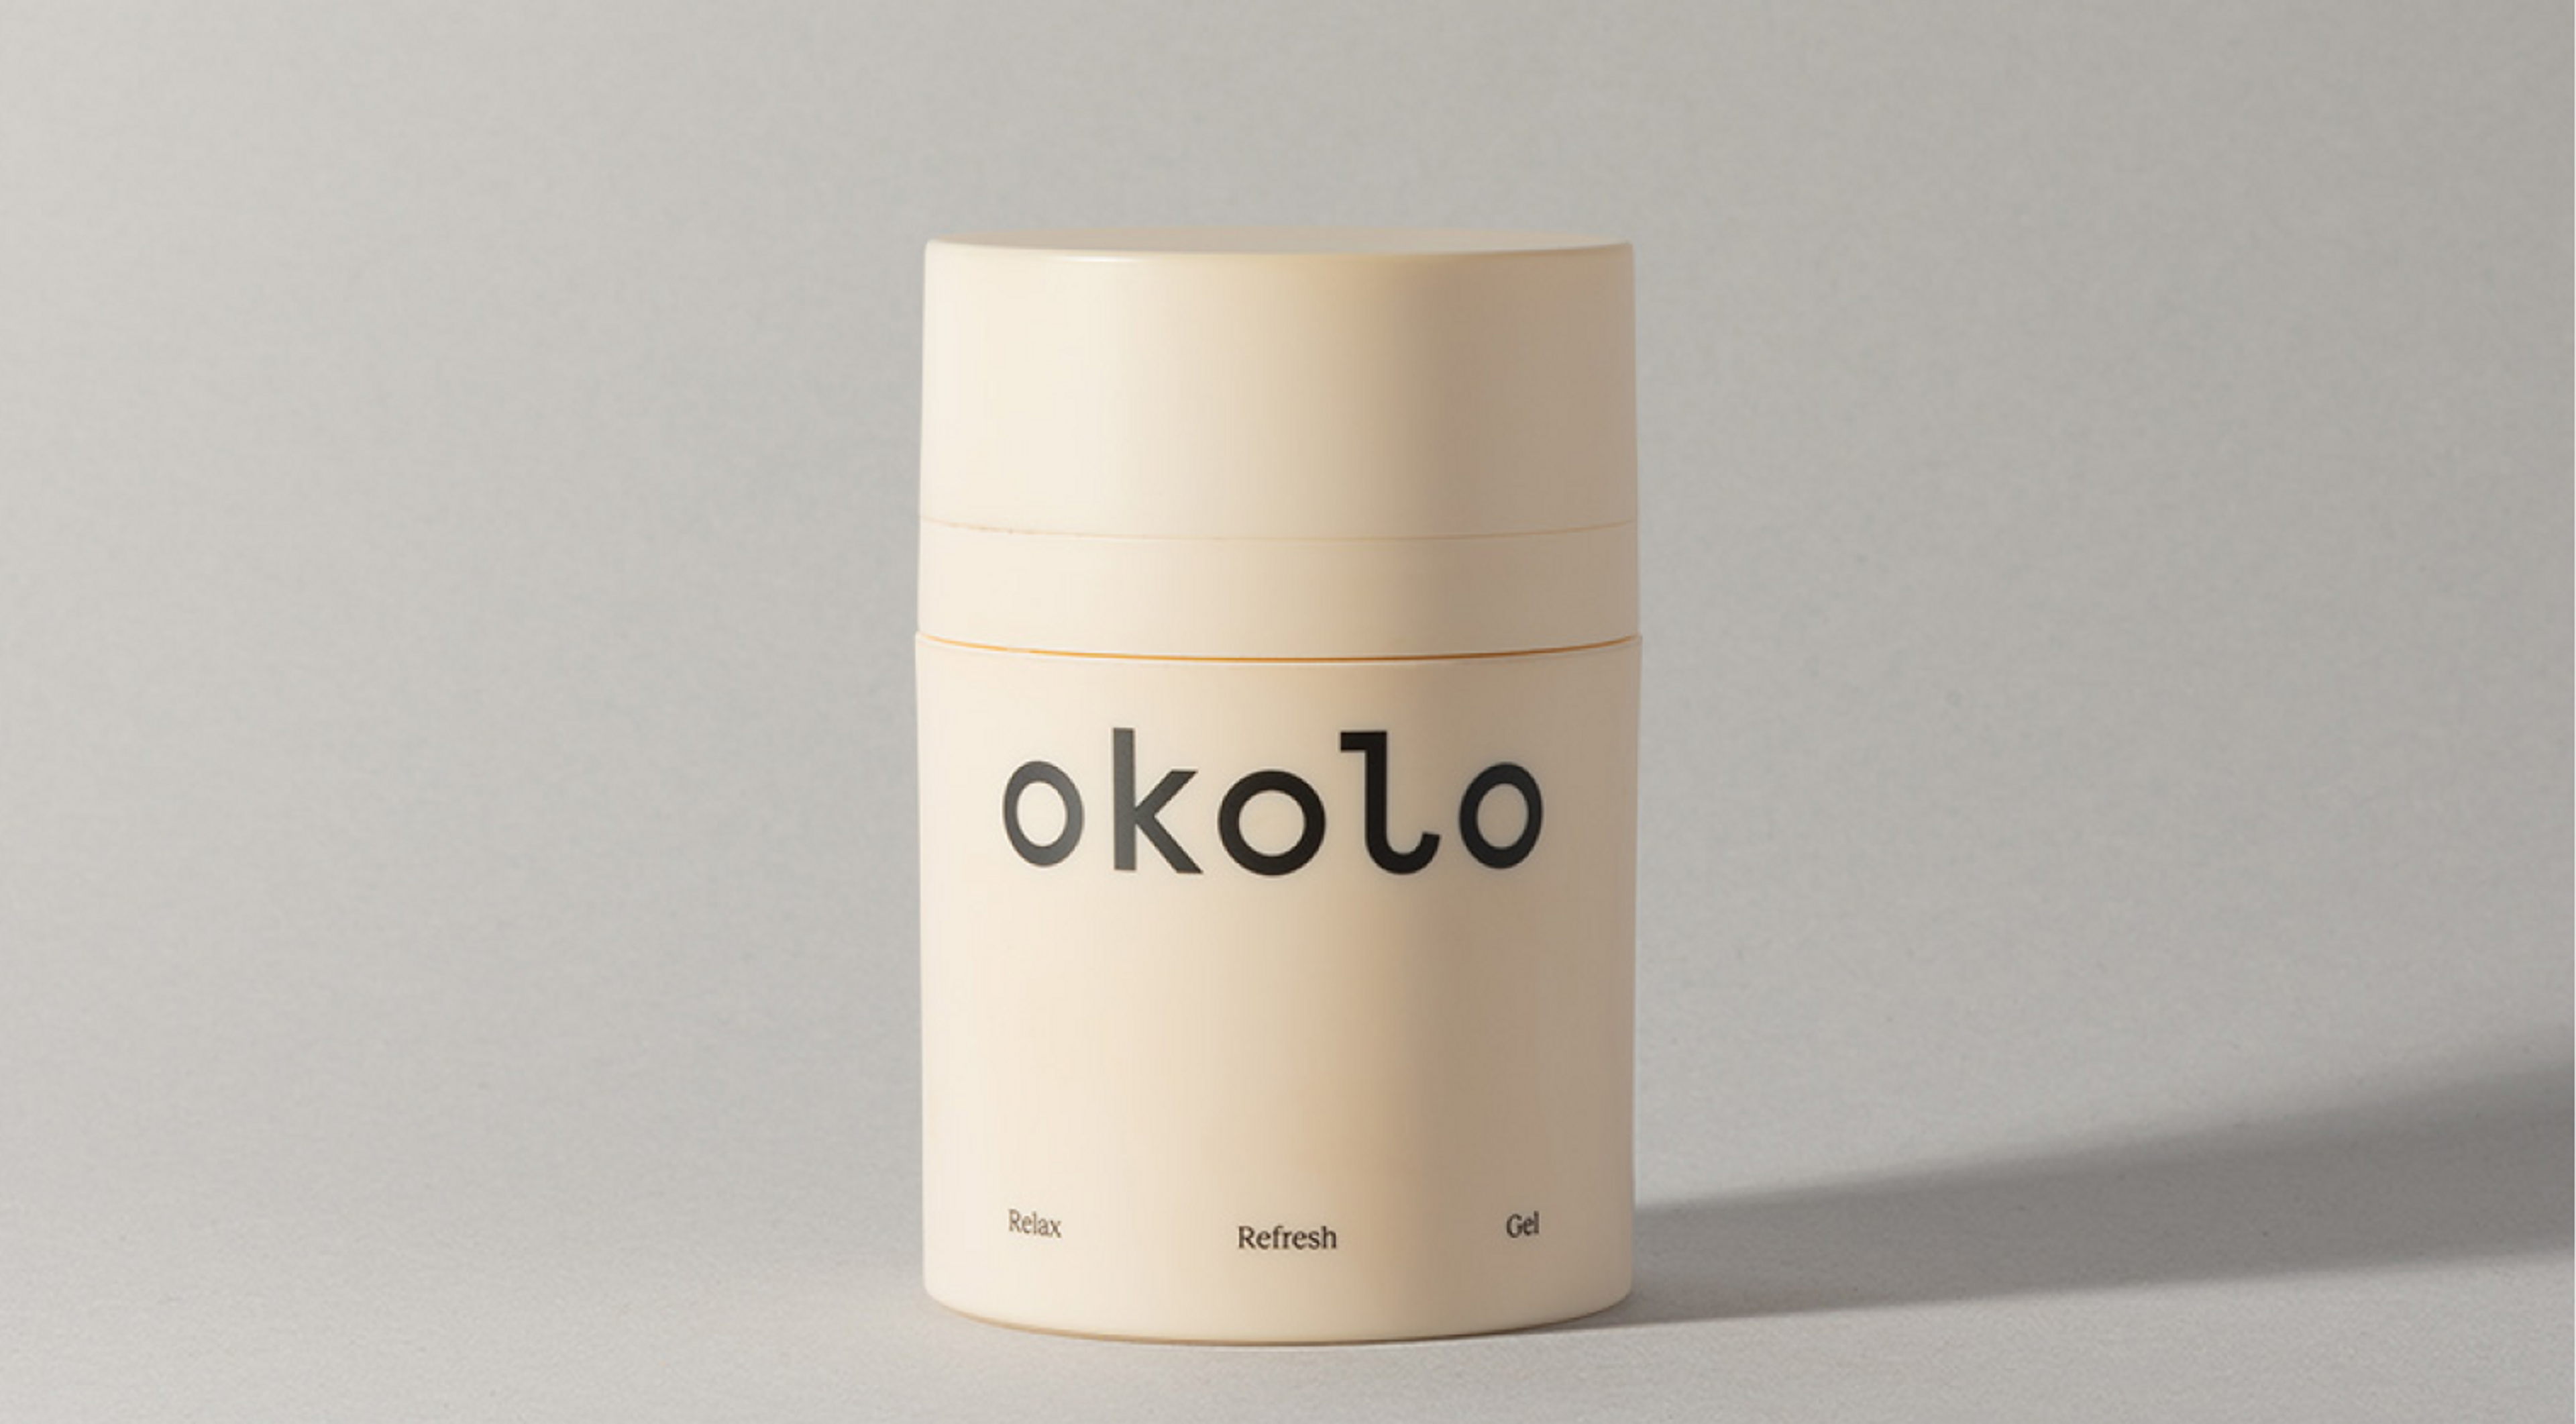 У бренда косметики Okolo вышли продукты для мам и детей